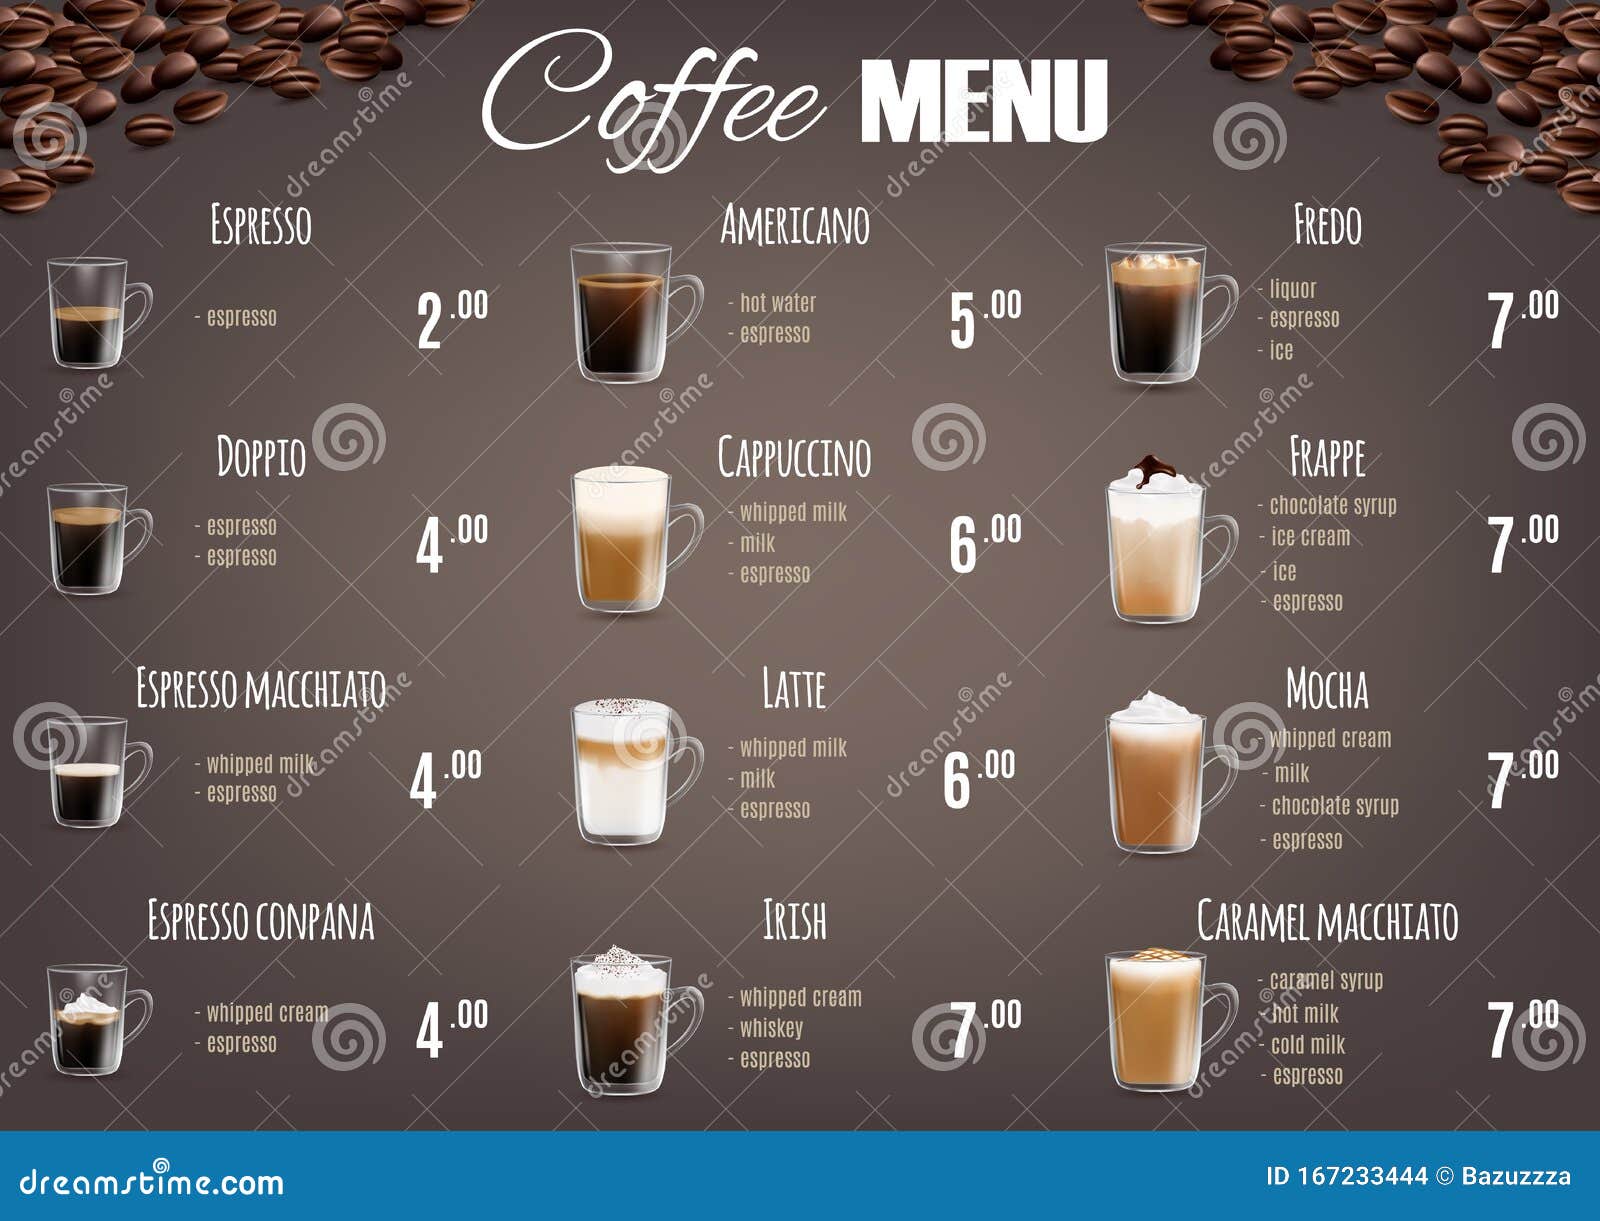 Preisliste Für Coffee Drinks Vektor Abbildung Illustration von